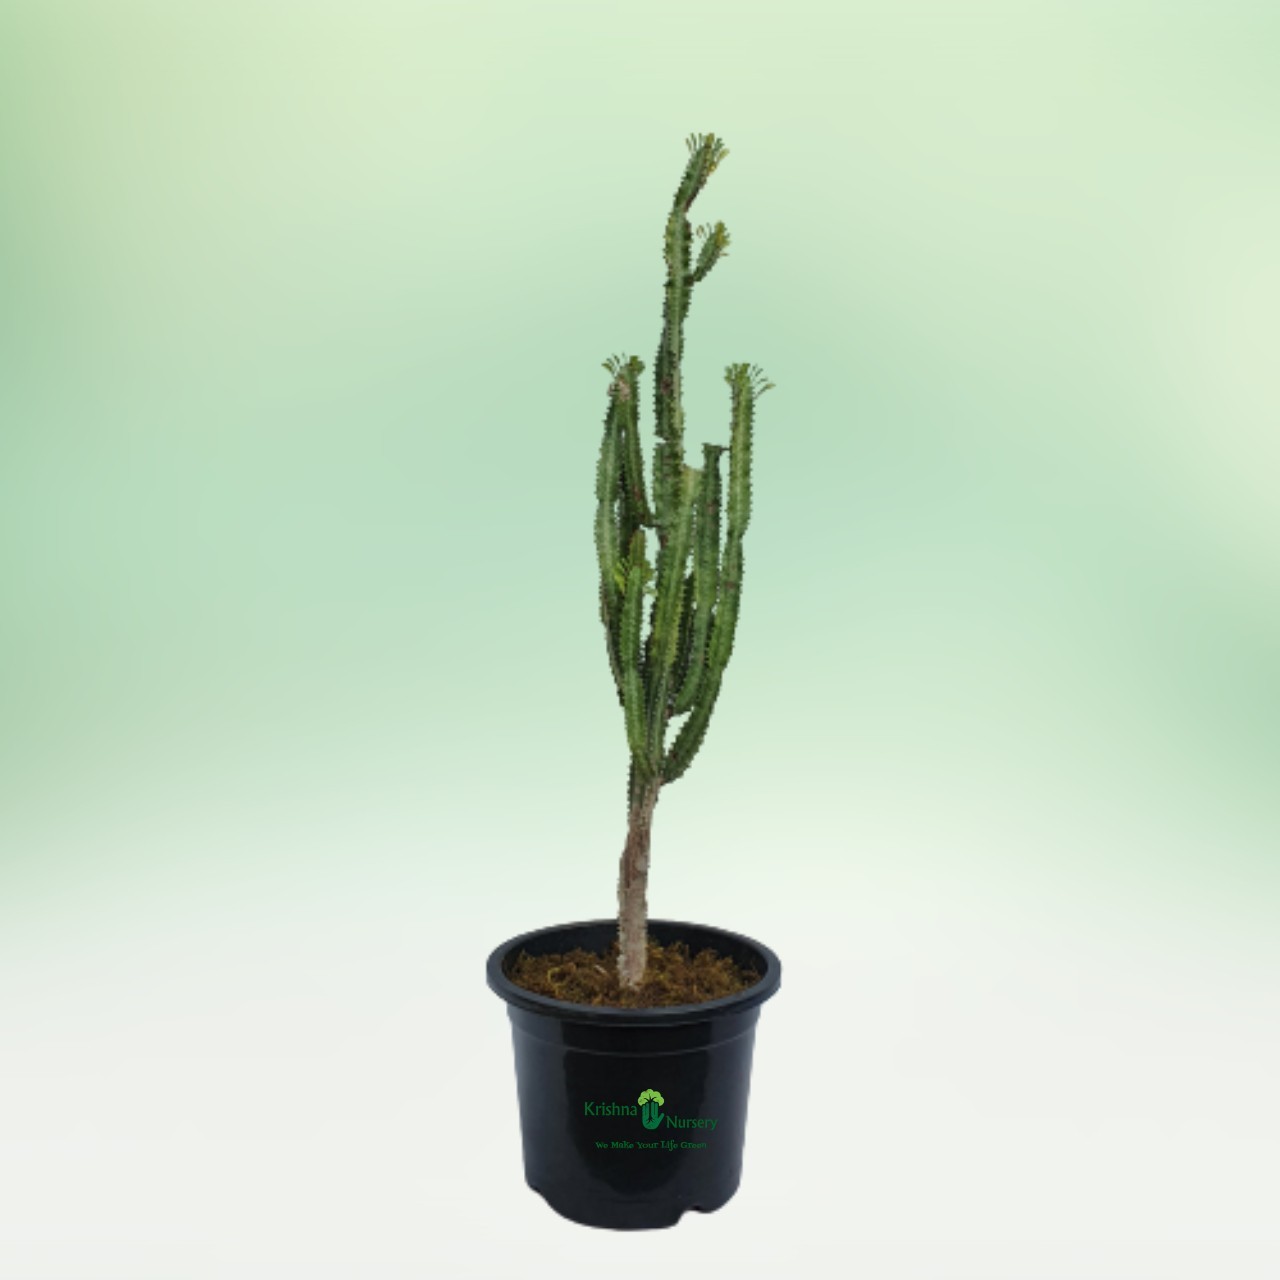 cactus-plant